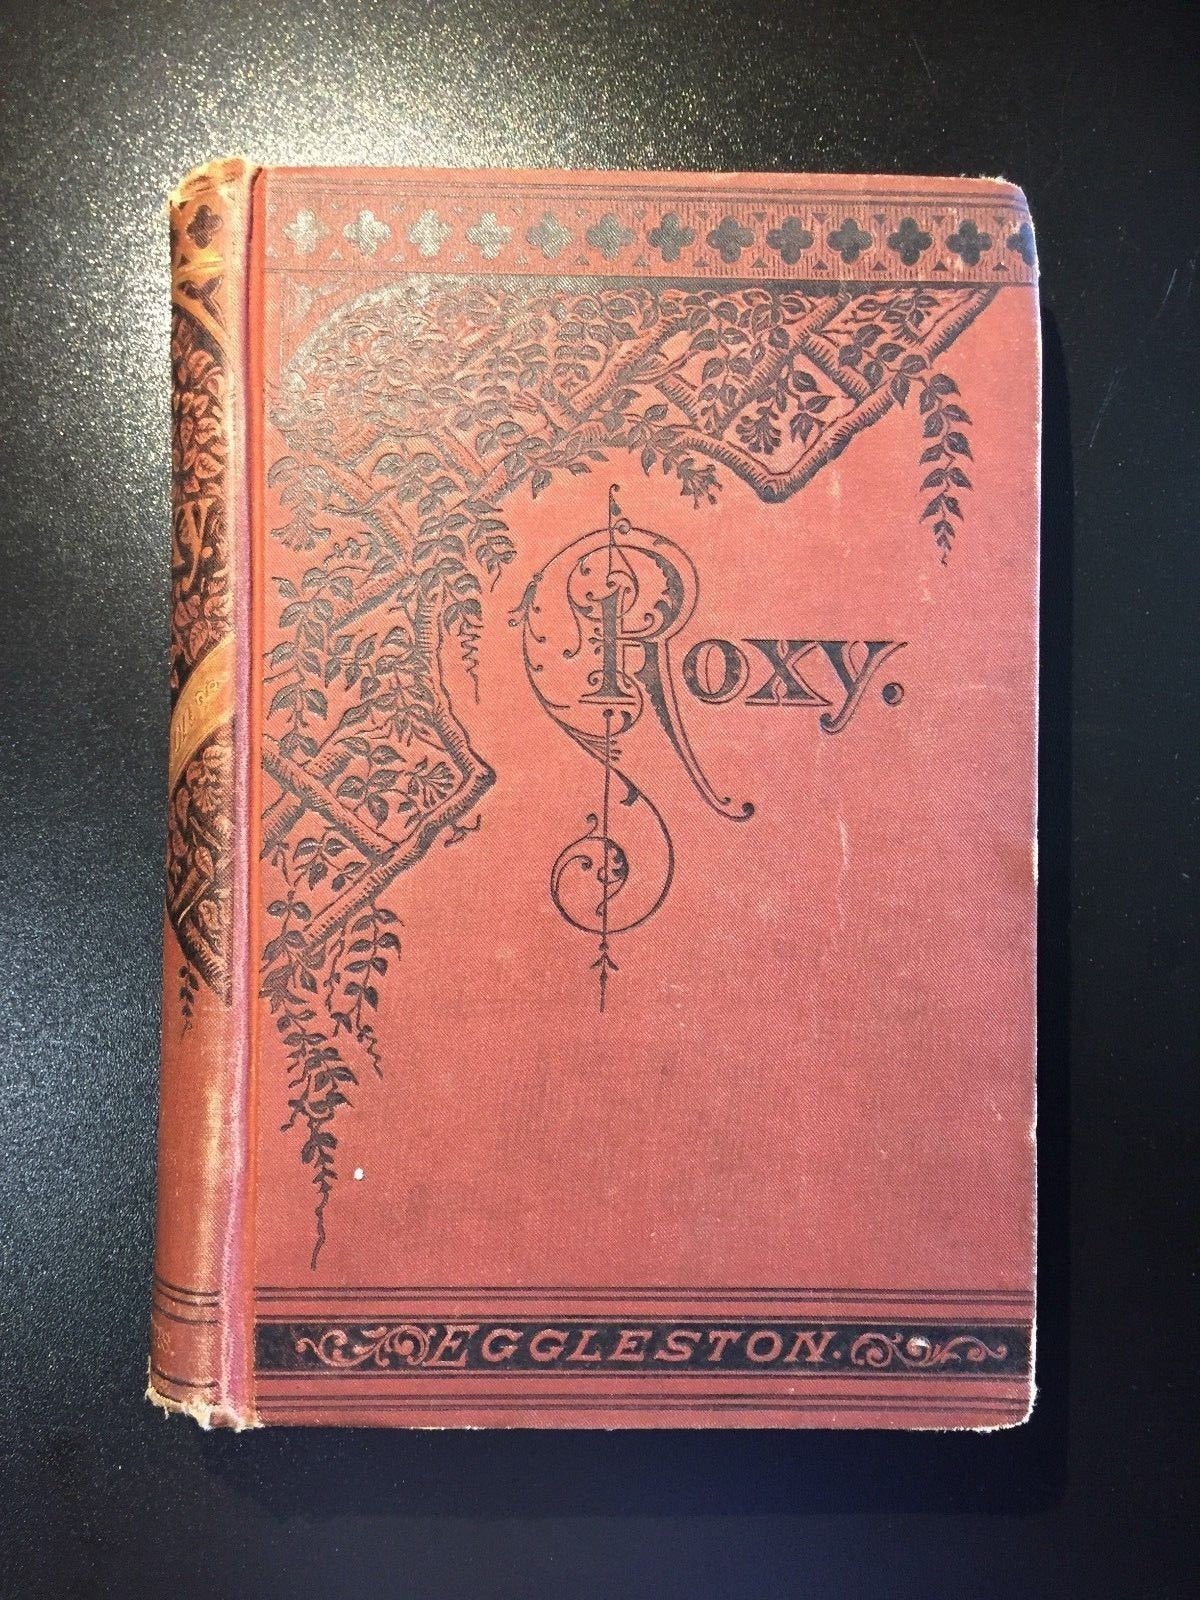 Roxy, Edward Eggleston, Victorian Binding, 1st Ed., Illustrated, Uncommon, 1878